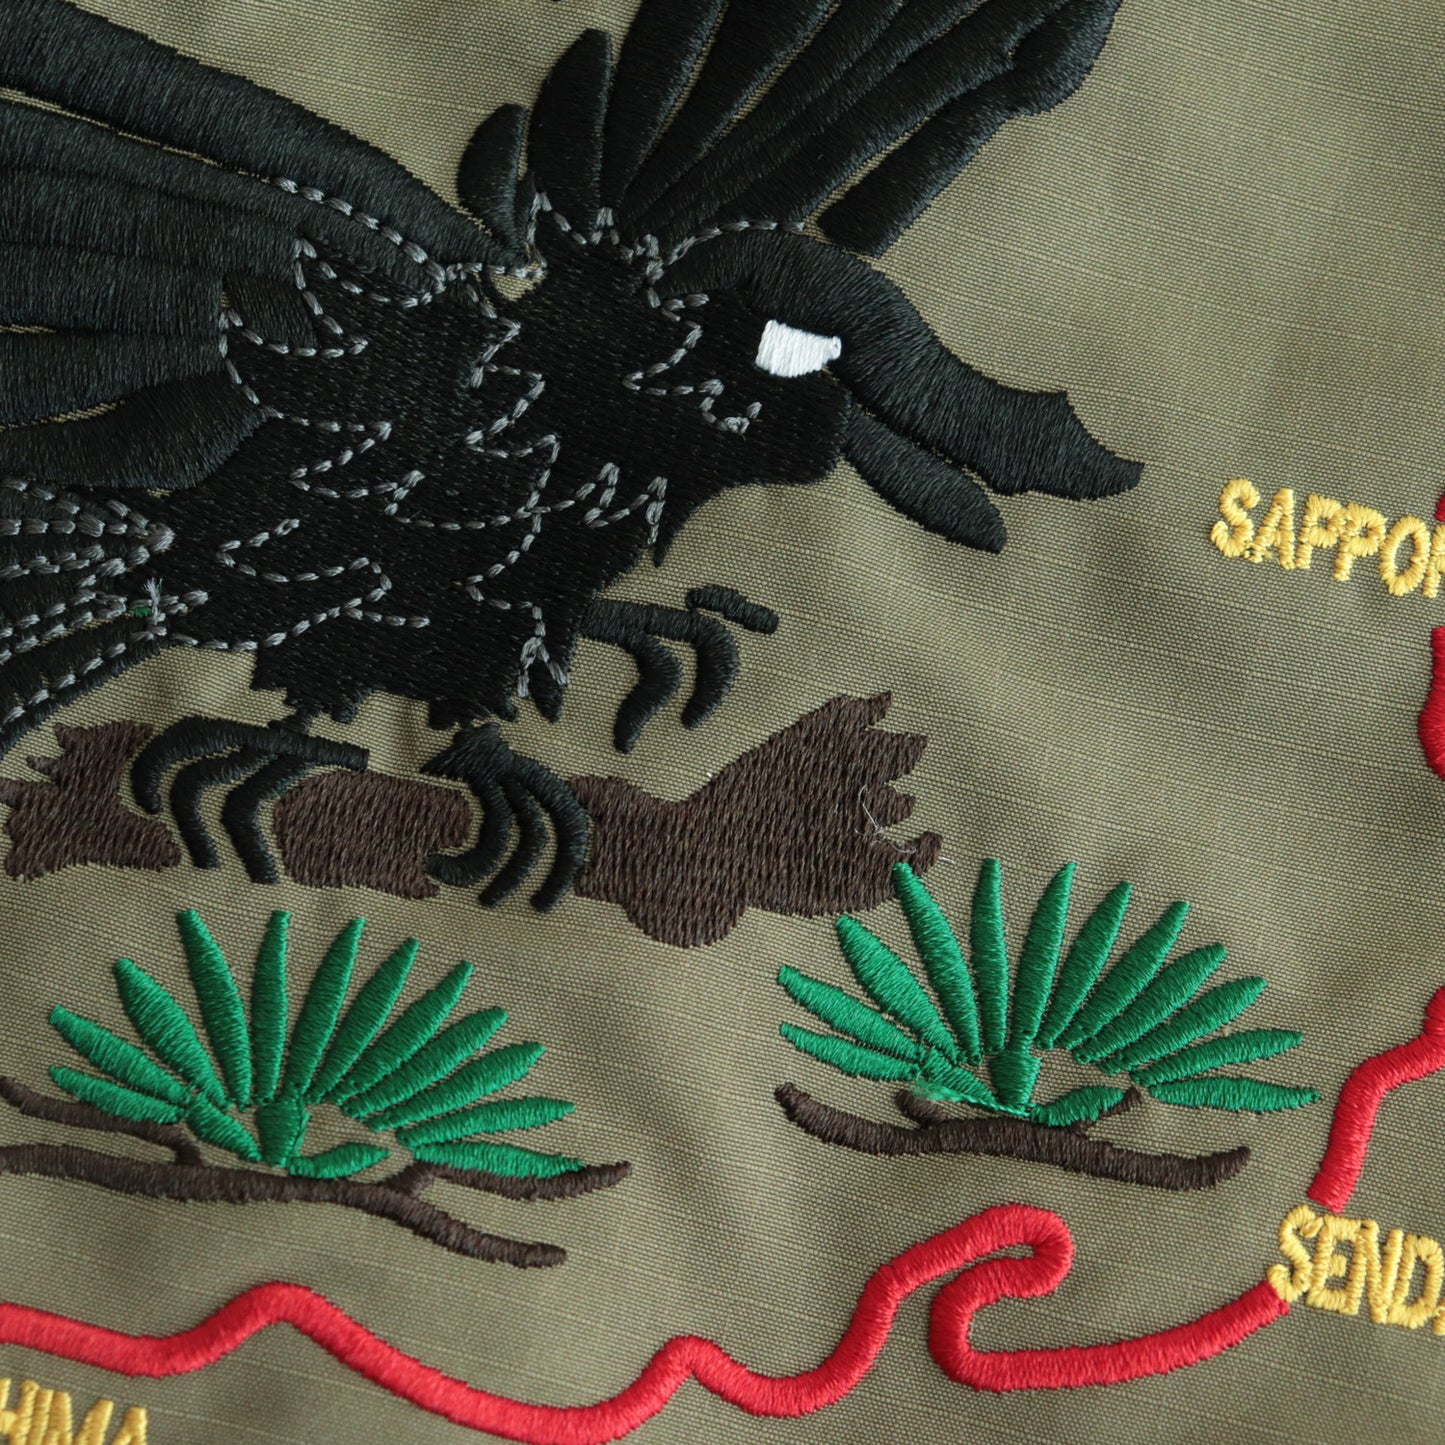 NEWCOMMUNE Souvenir military Jacket #KHAKI [13422003]